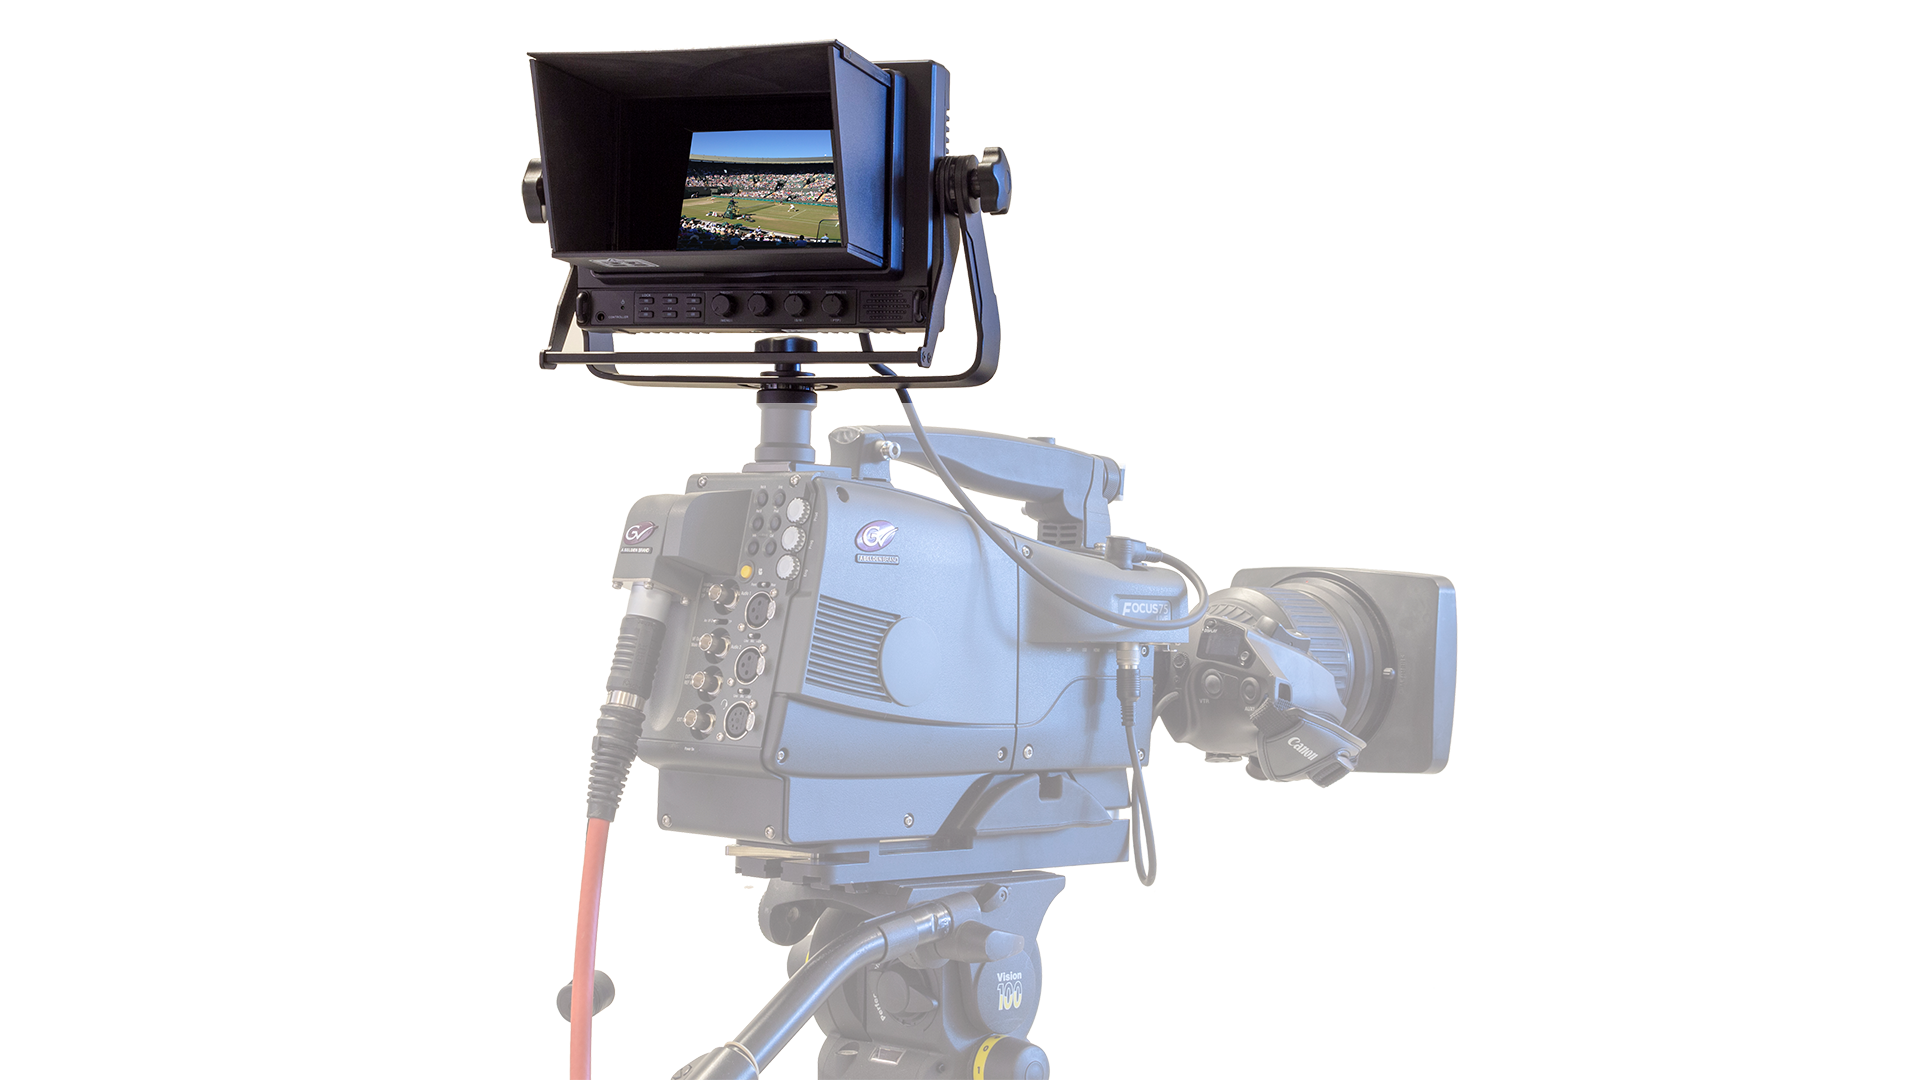 VFR 600-H Viewfinder on Camera